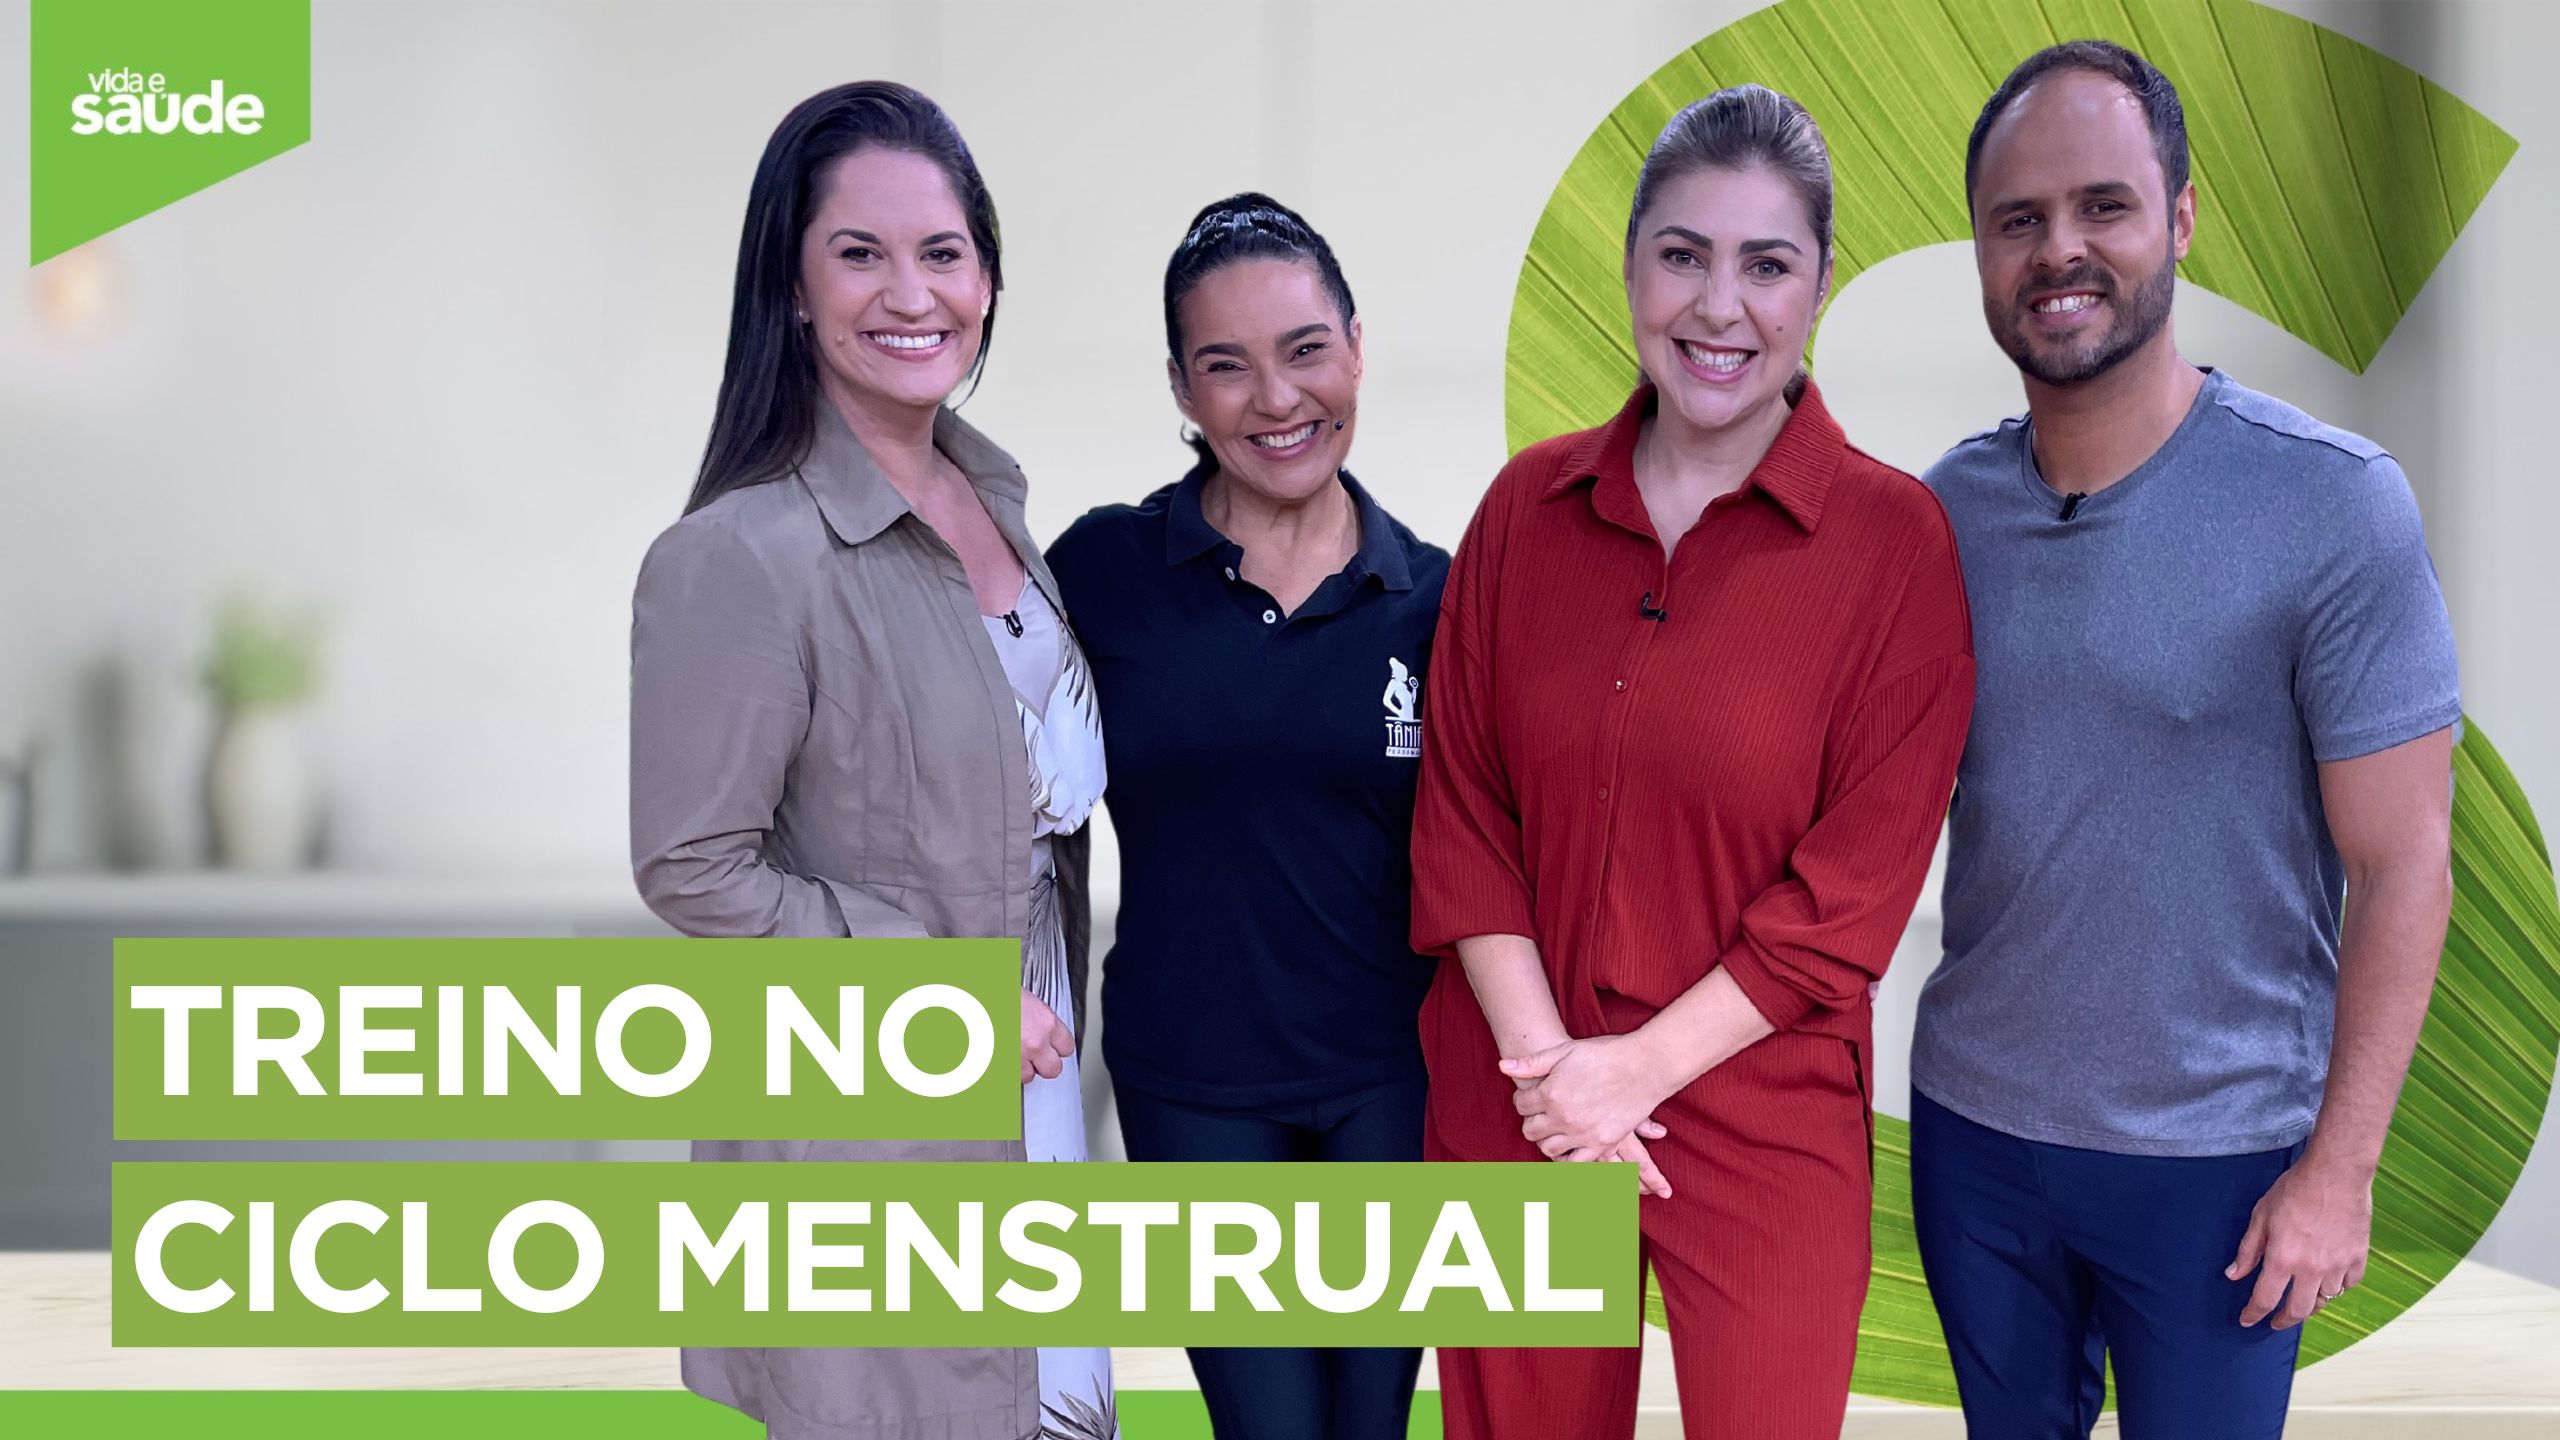 Quinta do mexa-se: Treino no ciclo menstrual